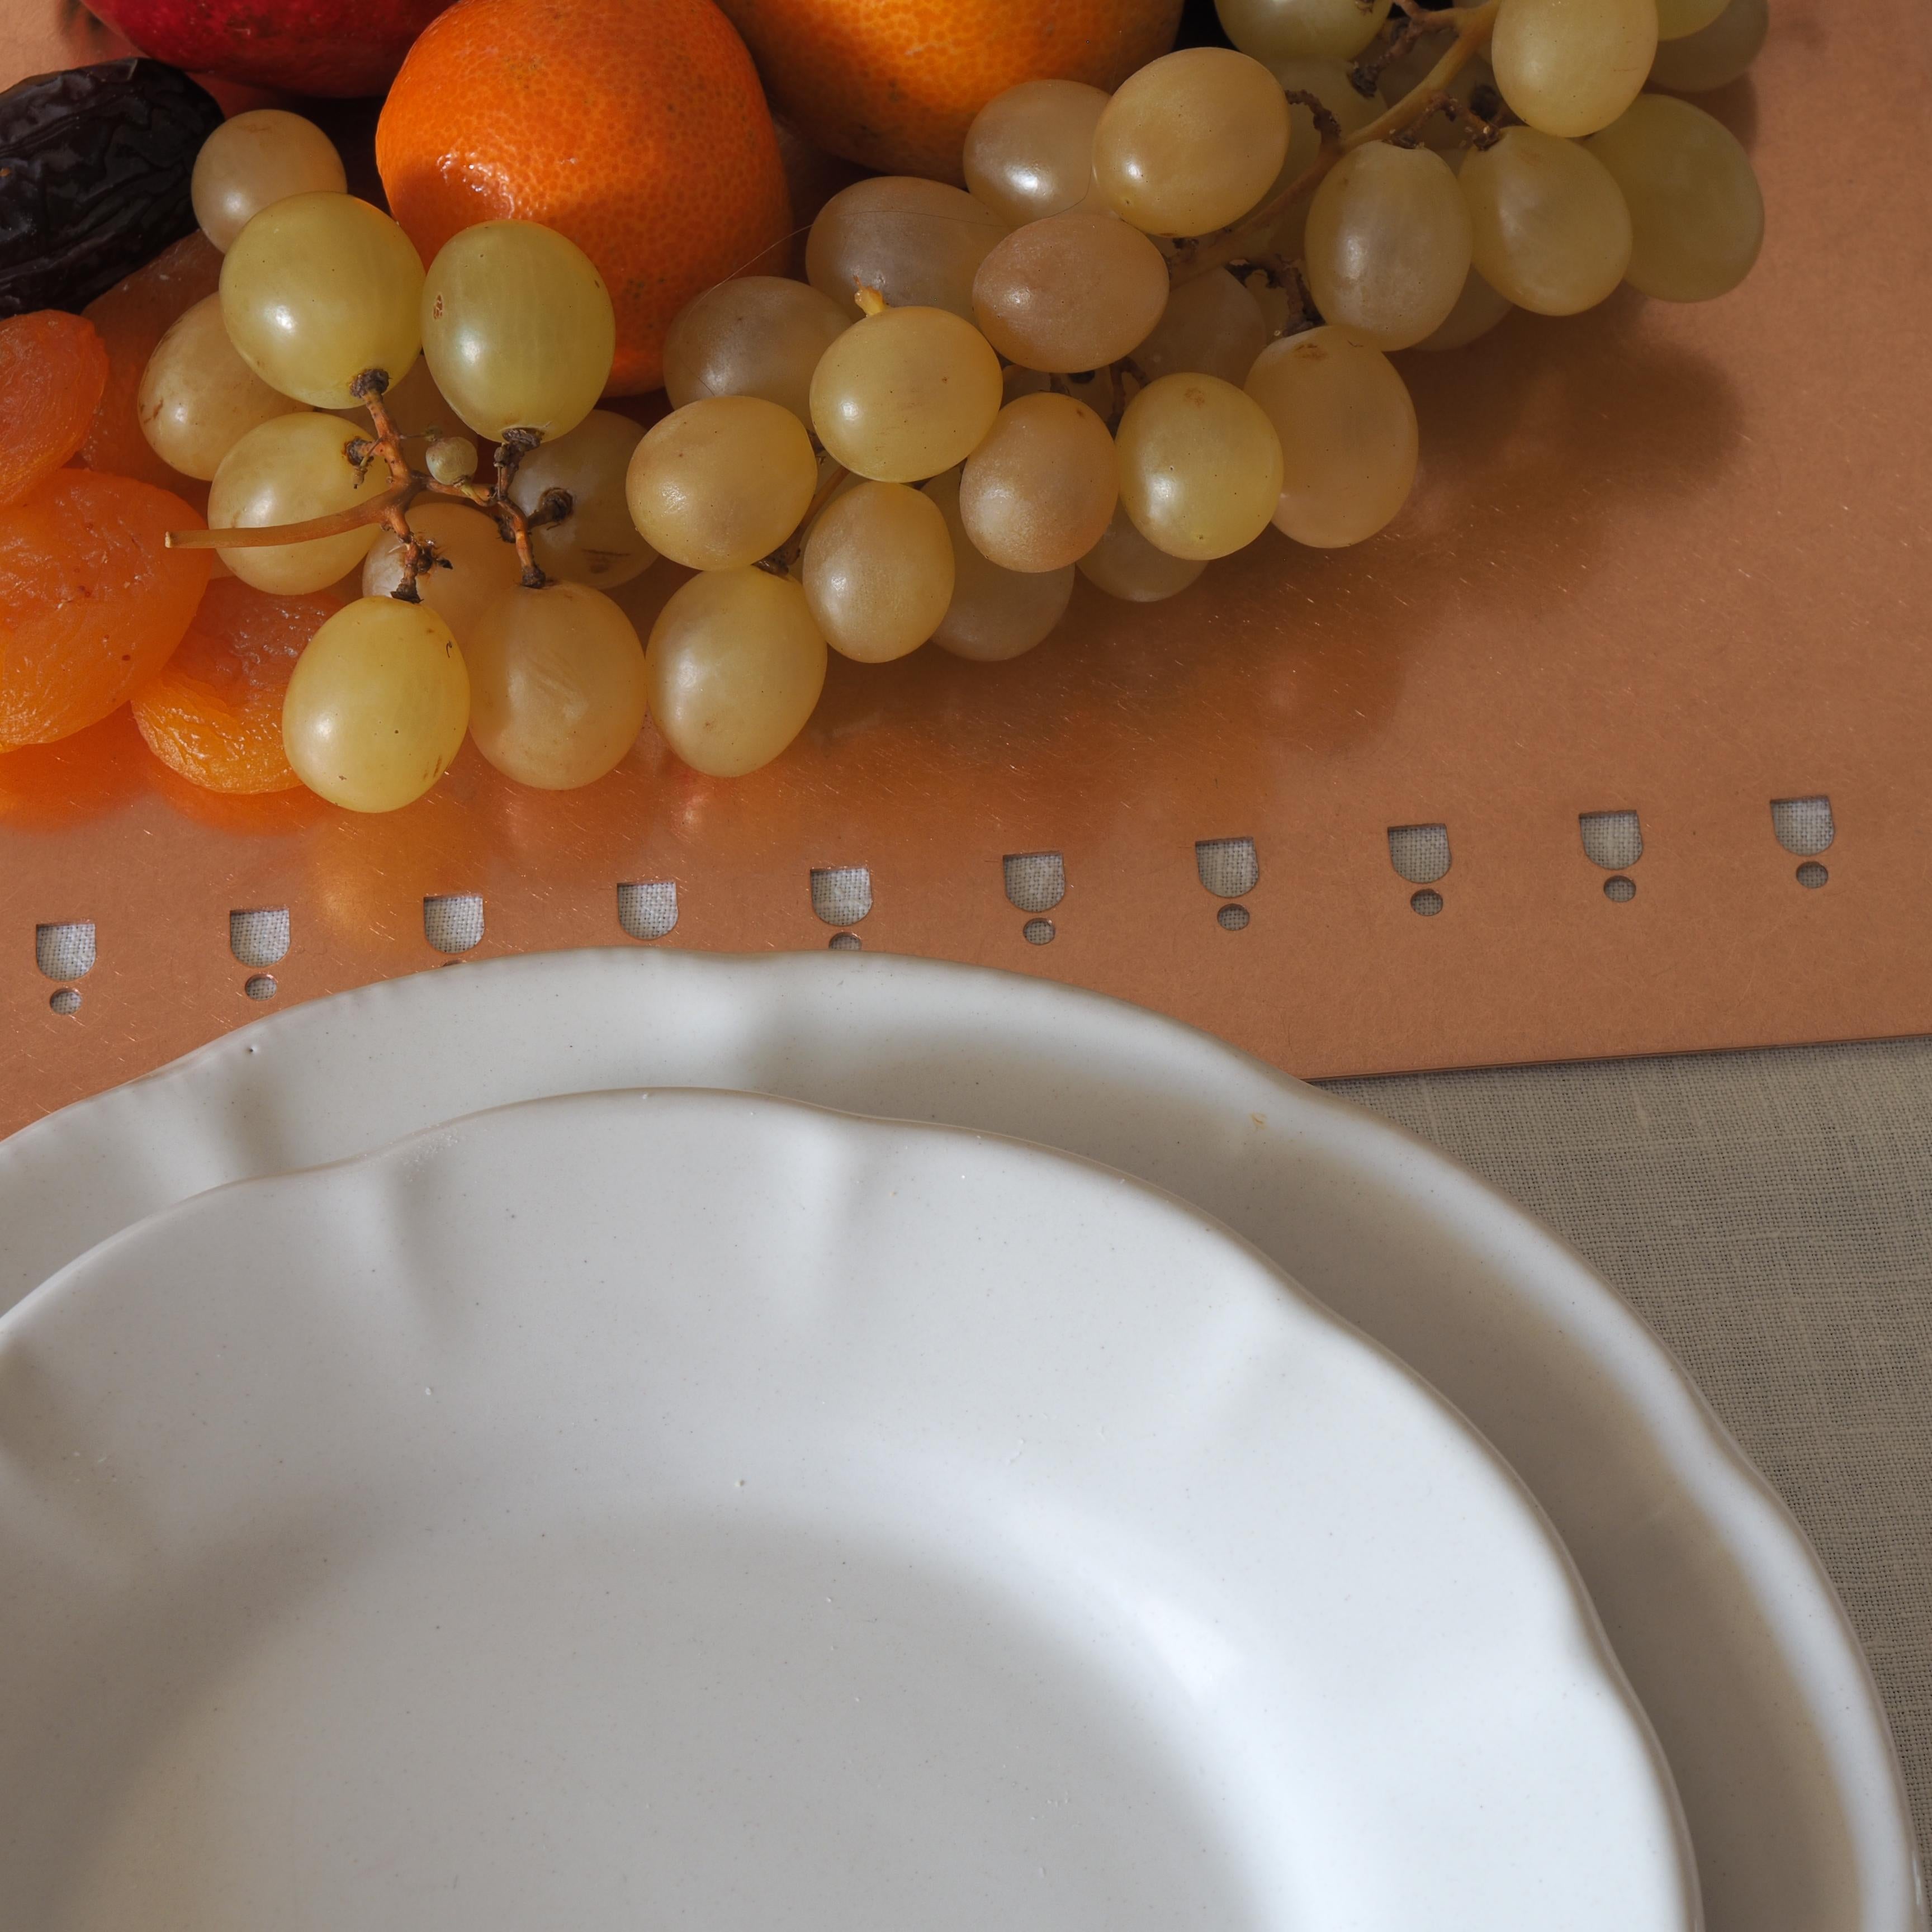 Italian 21st Century Ceramic Dinner Plate White Handmade For Sale